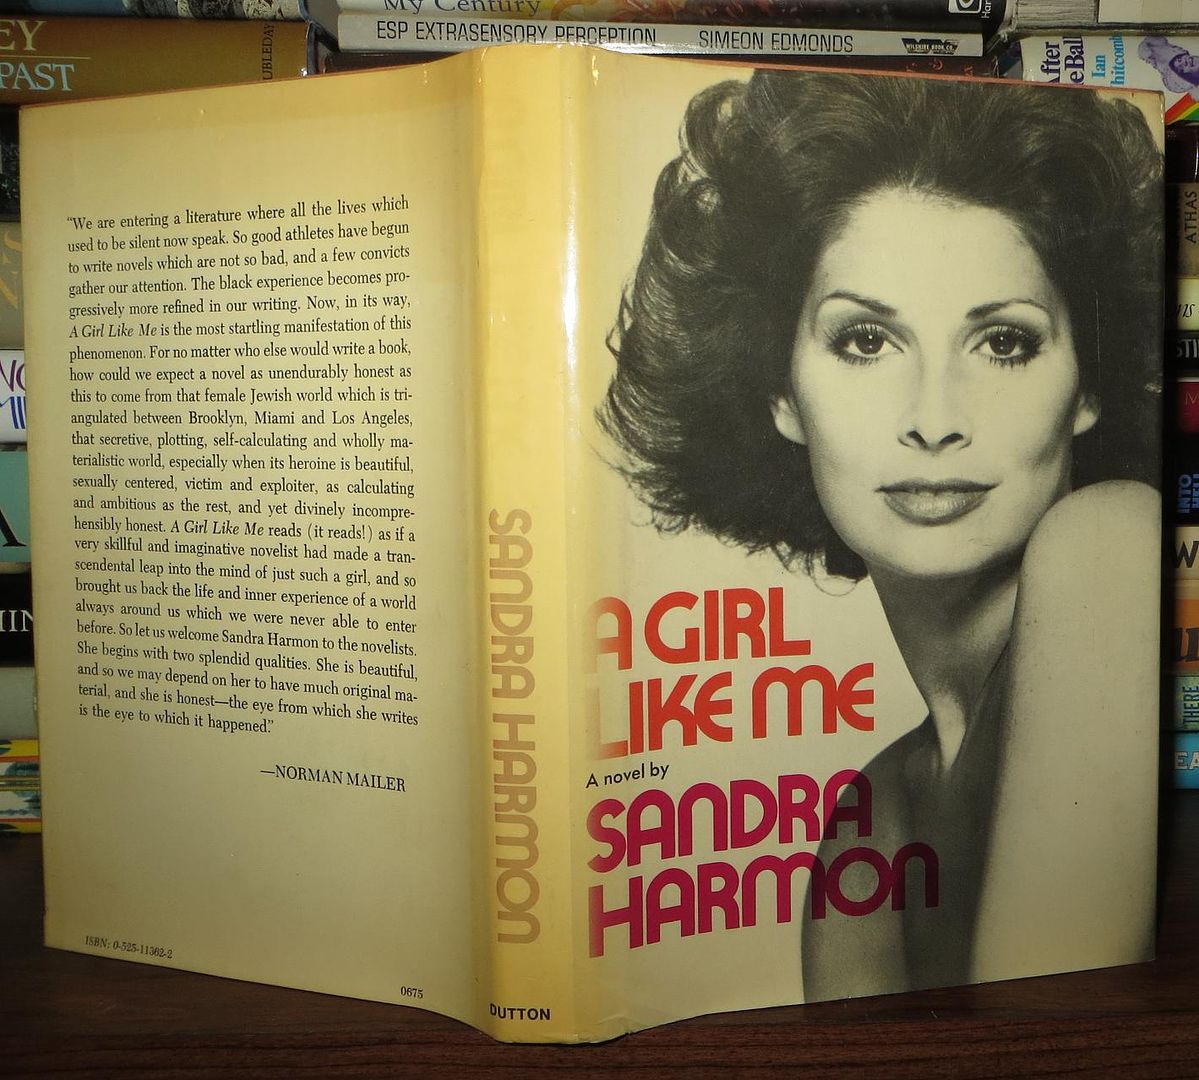 HARMON, SANDRA - A Girl Like Me